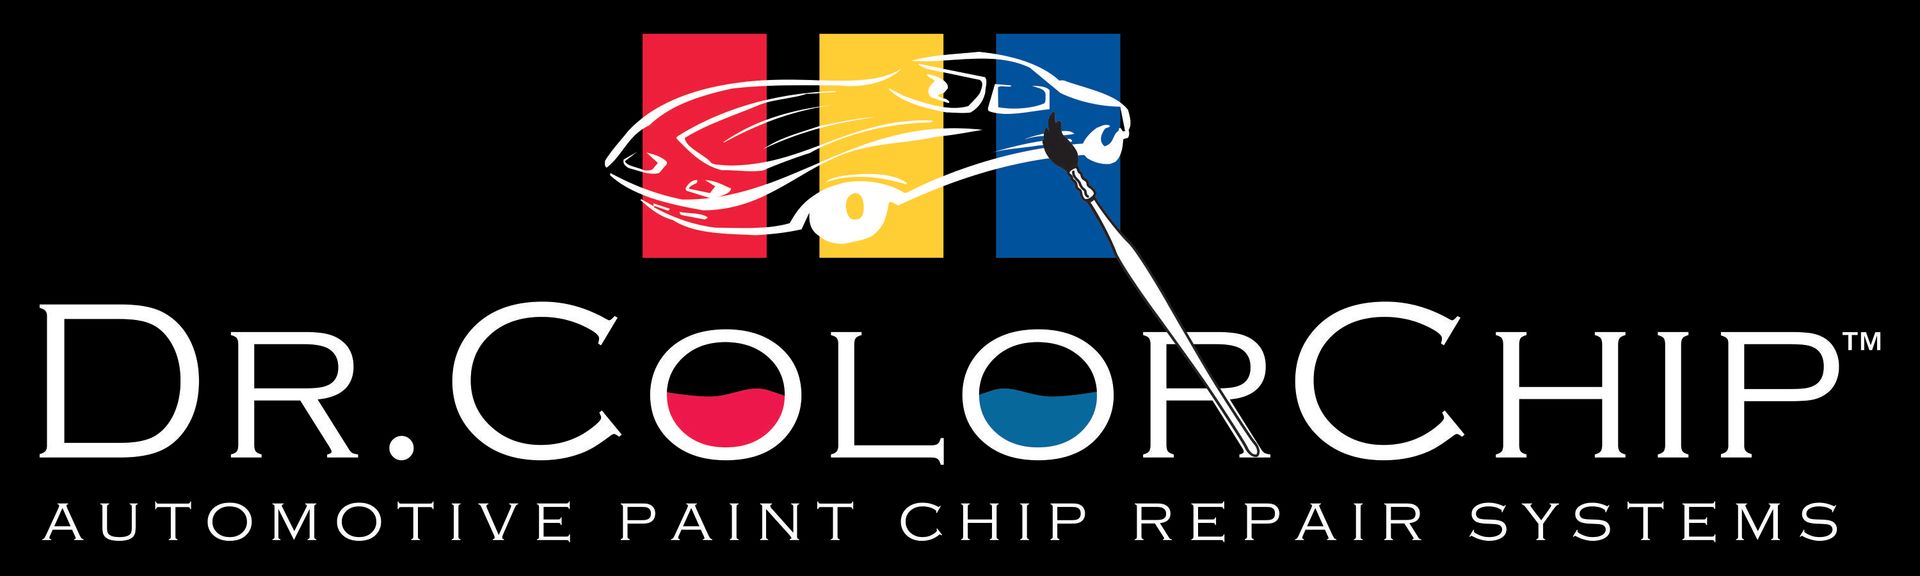 a logo for dr. colorchip automotive paint chip repair systems